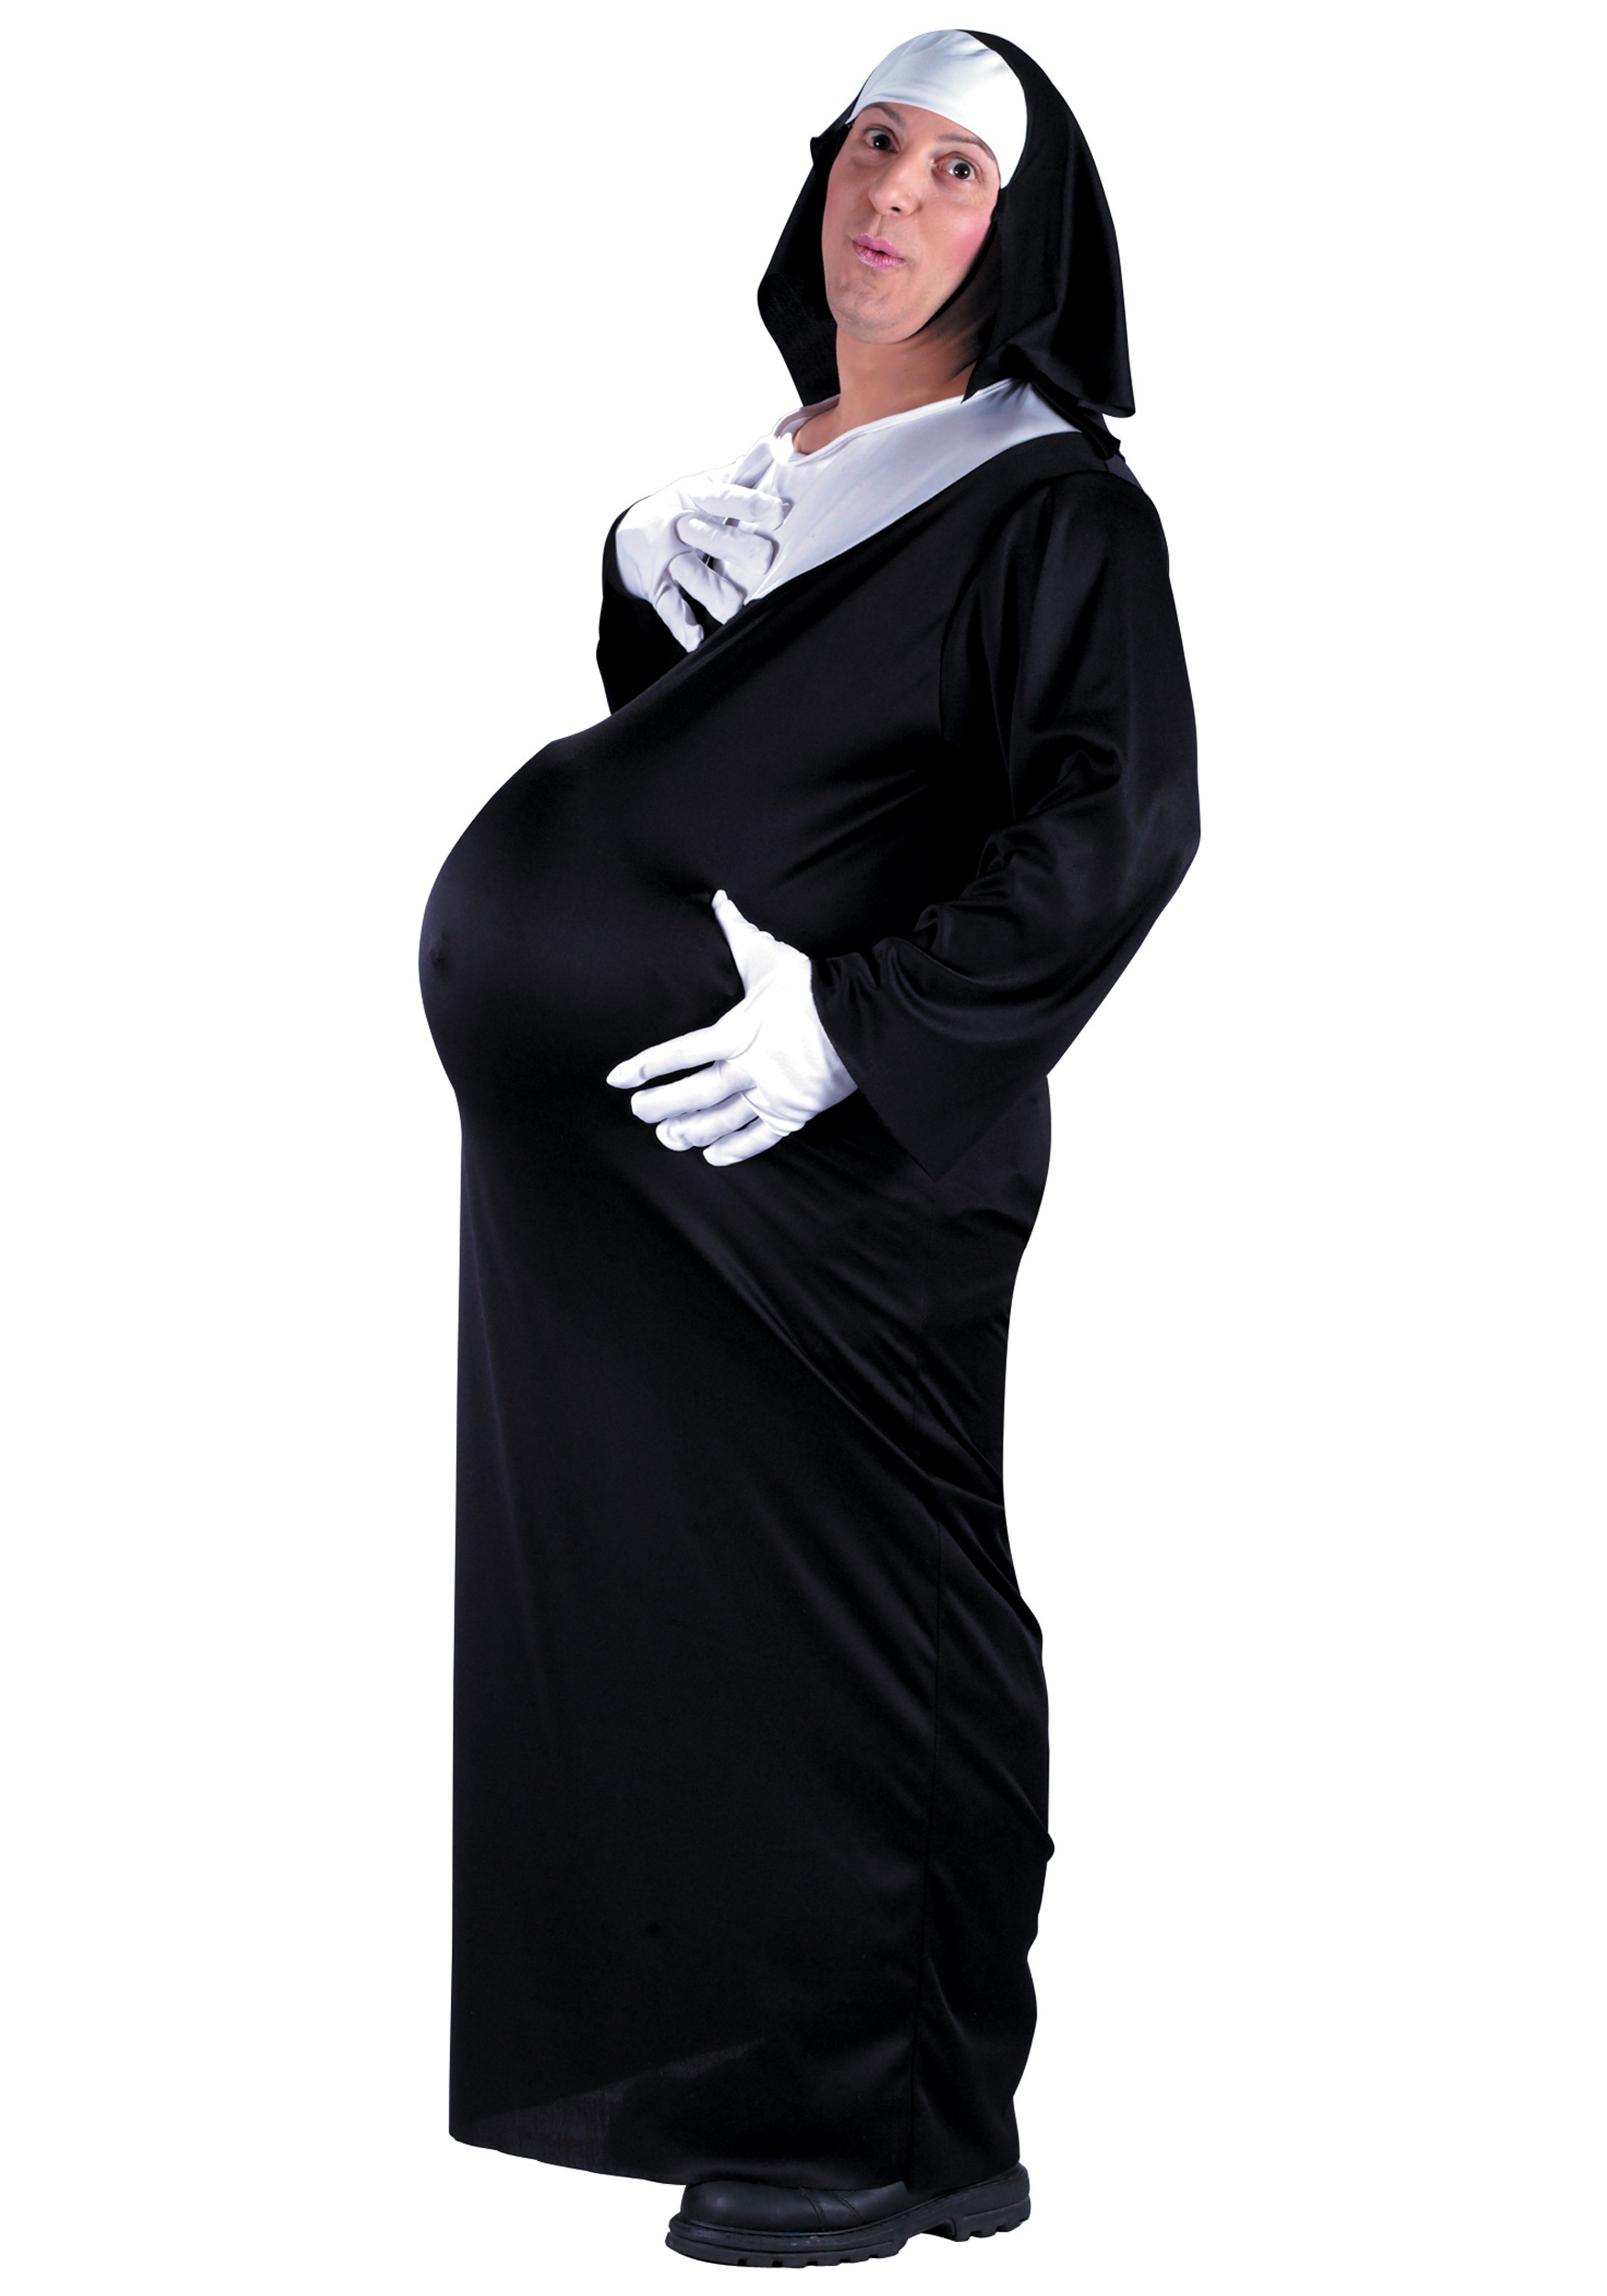 Pregnant Nun Costume. 